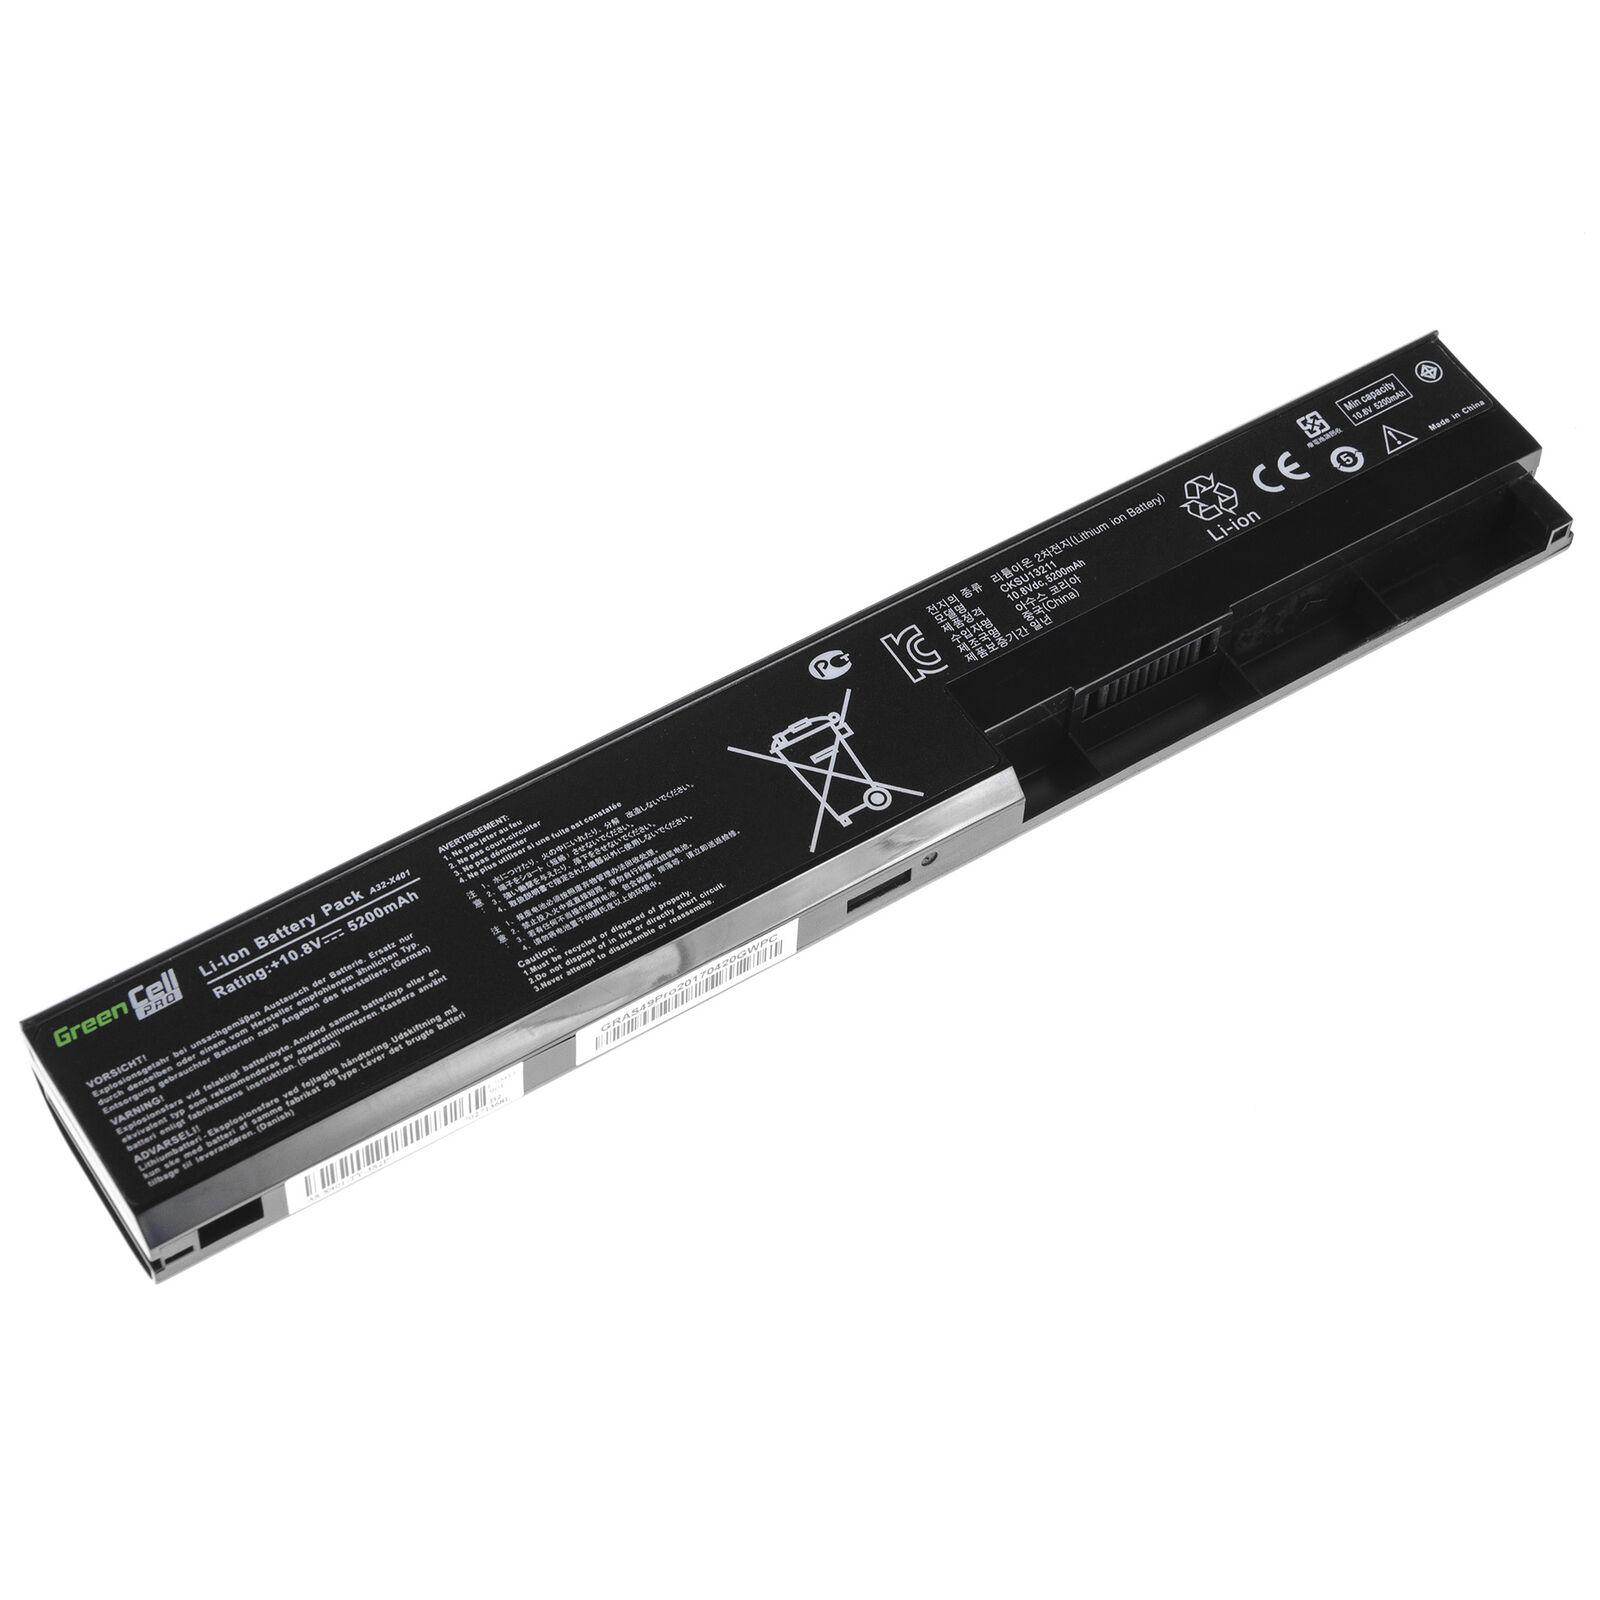 Batterie pour ASUS X301 X301A X301U X501 X501A X501U A31-X401 A41-X401(compatible)